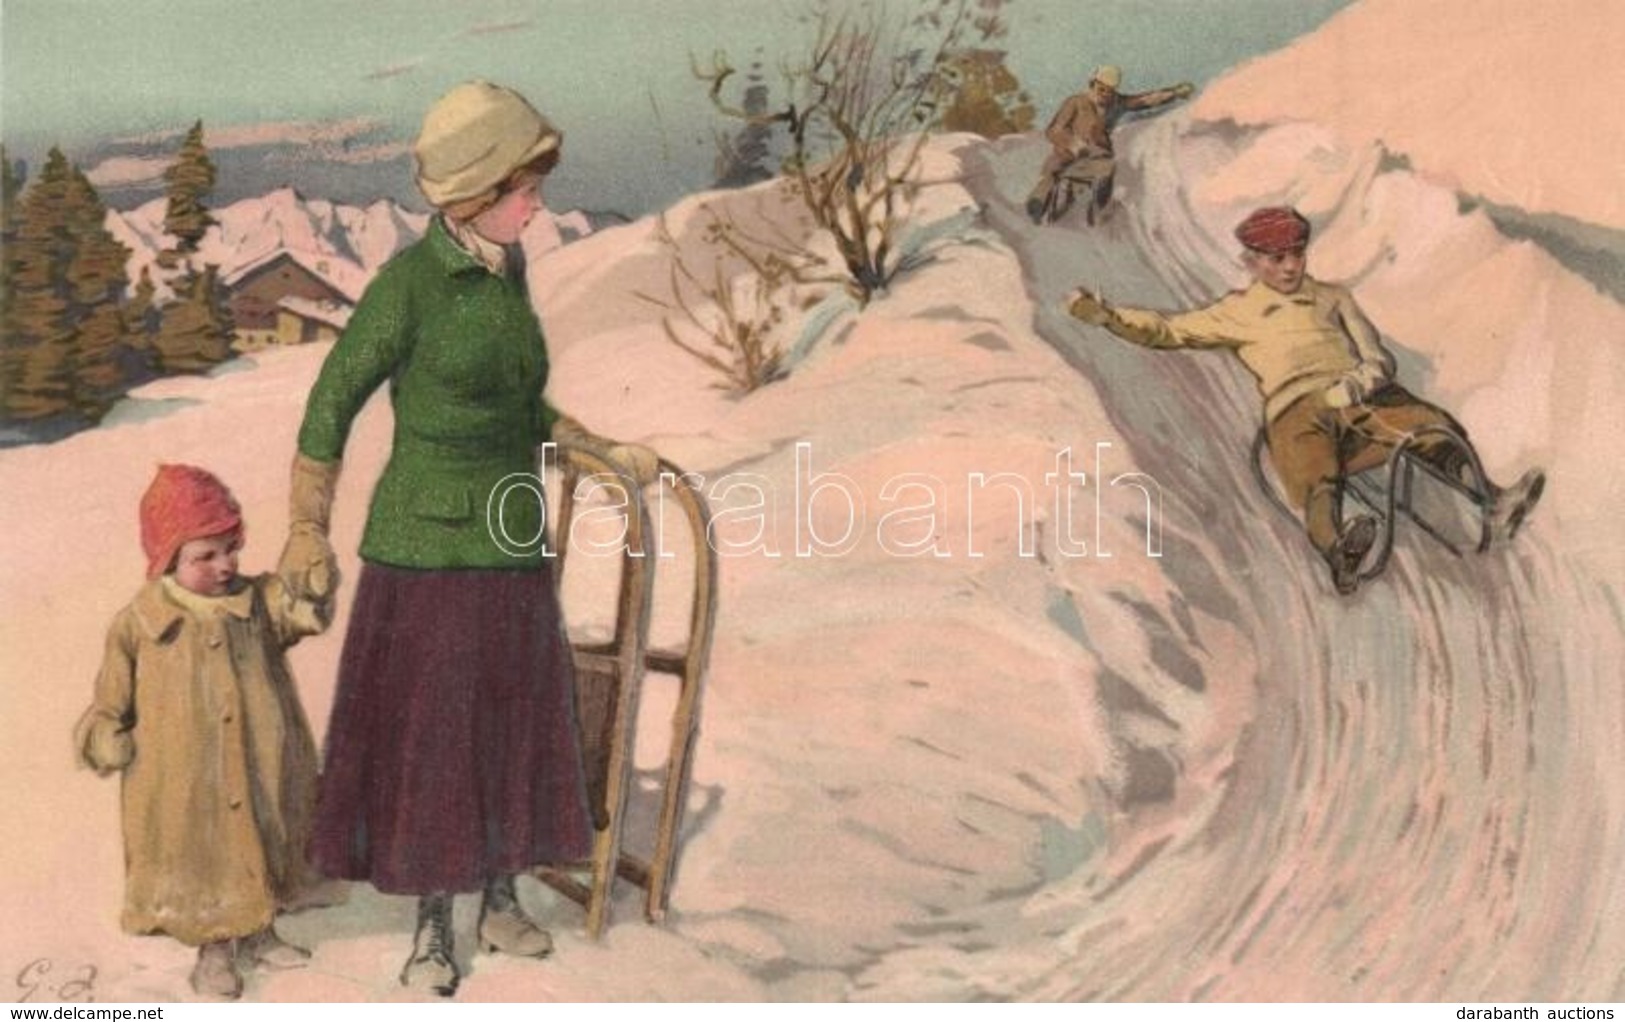 ** T1 Sledding People. Meissner & Buch Künstler-Postkarten Serie 1800. Sport Im Winter. Litho - Ohne Zuordnung